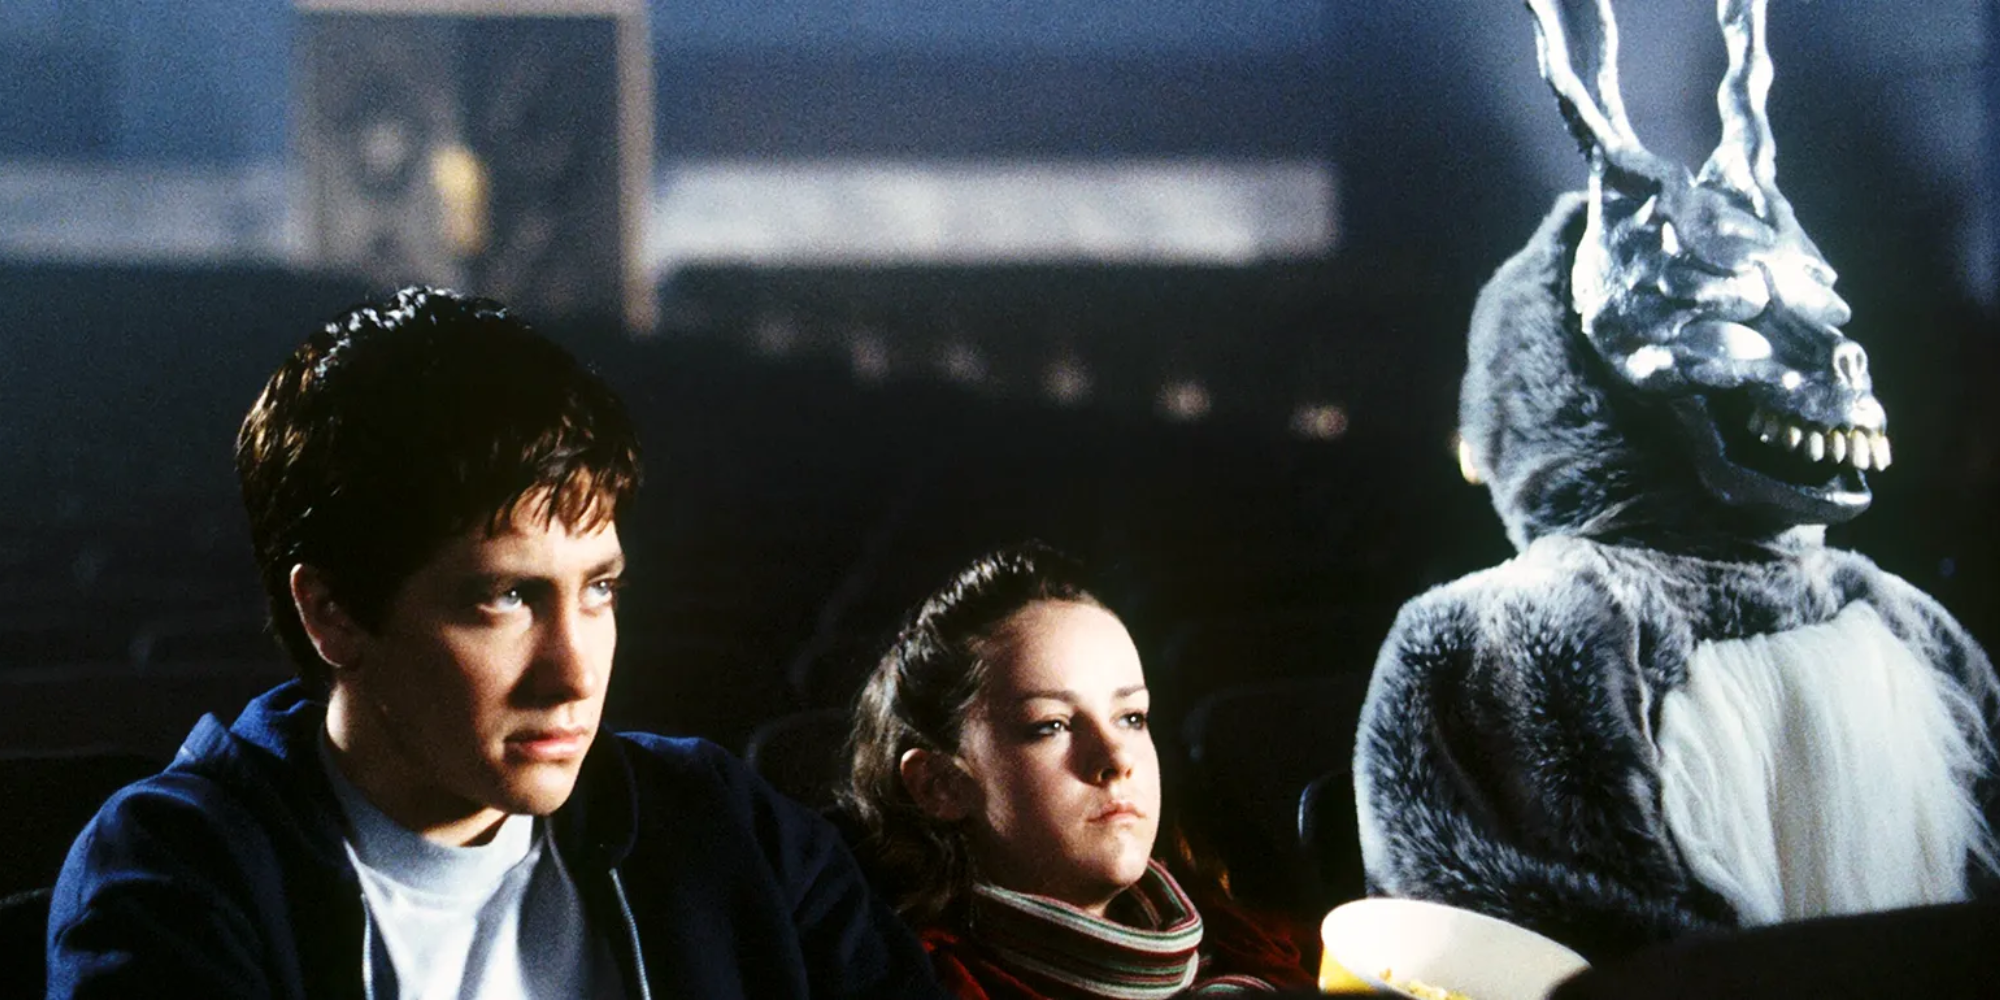 Donnie Darko, Gretchen Ross, and Frank the Rabbit sit in an empty cinema in 'Donnie Darko'.